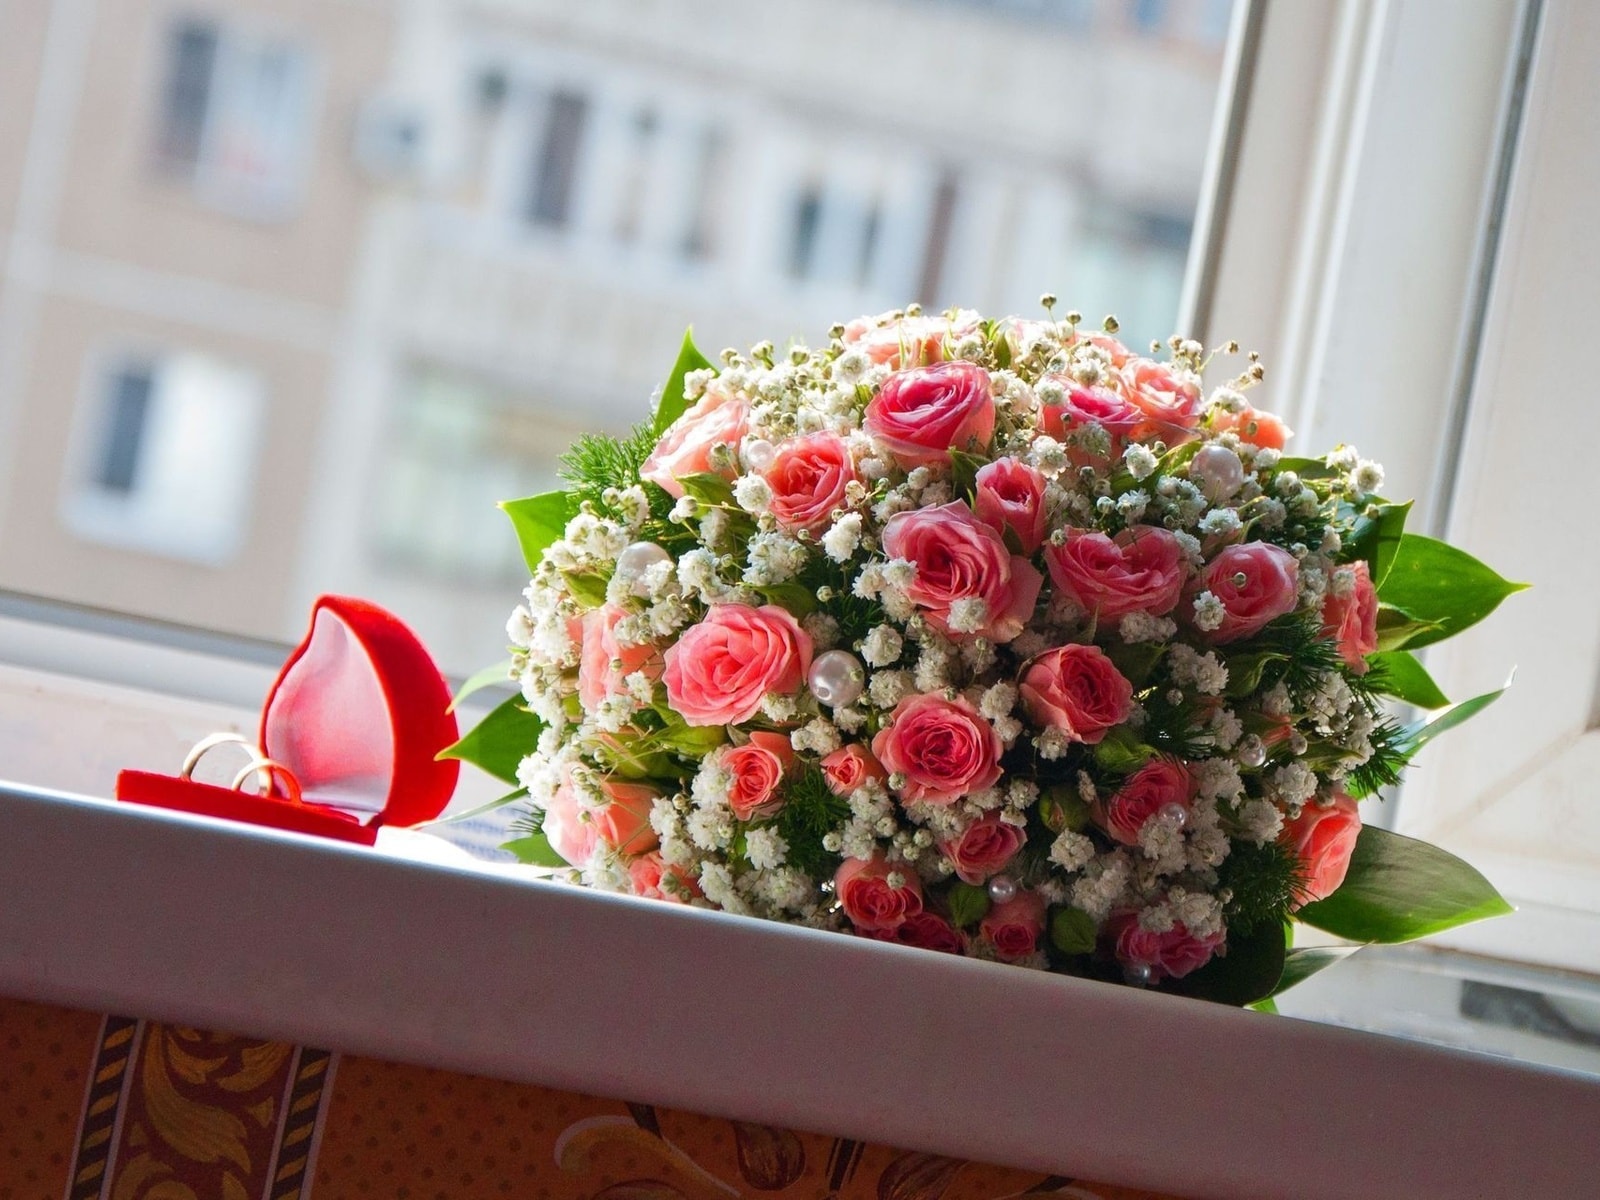 Bilder von schönen Blumensträußen. 80 atemberaubende Fotos